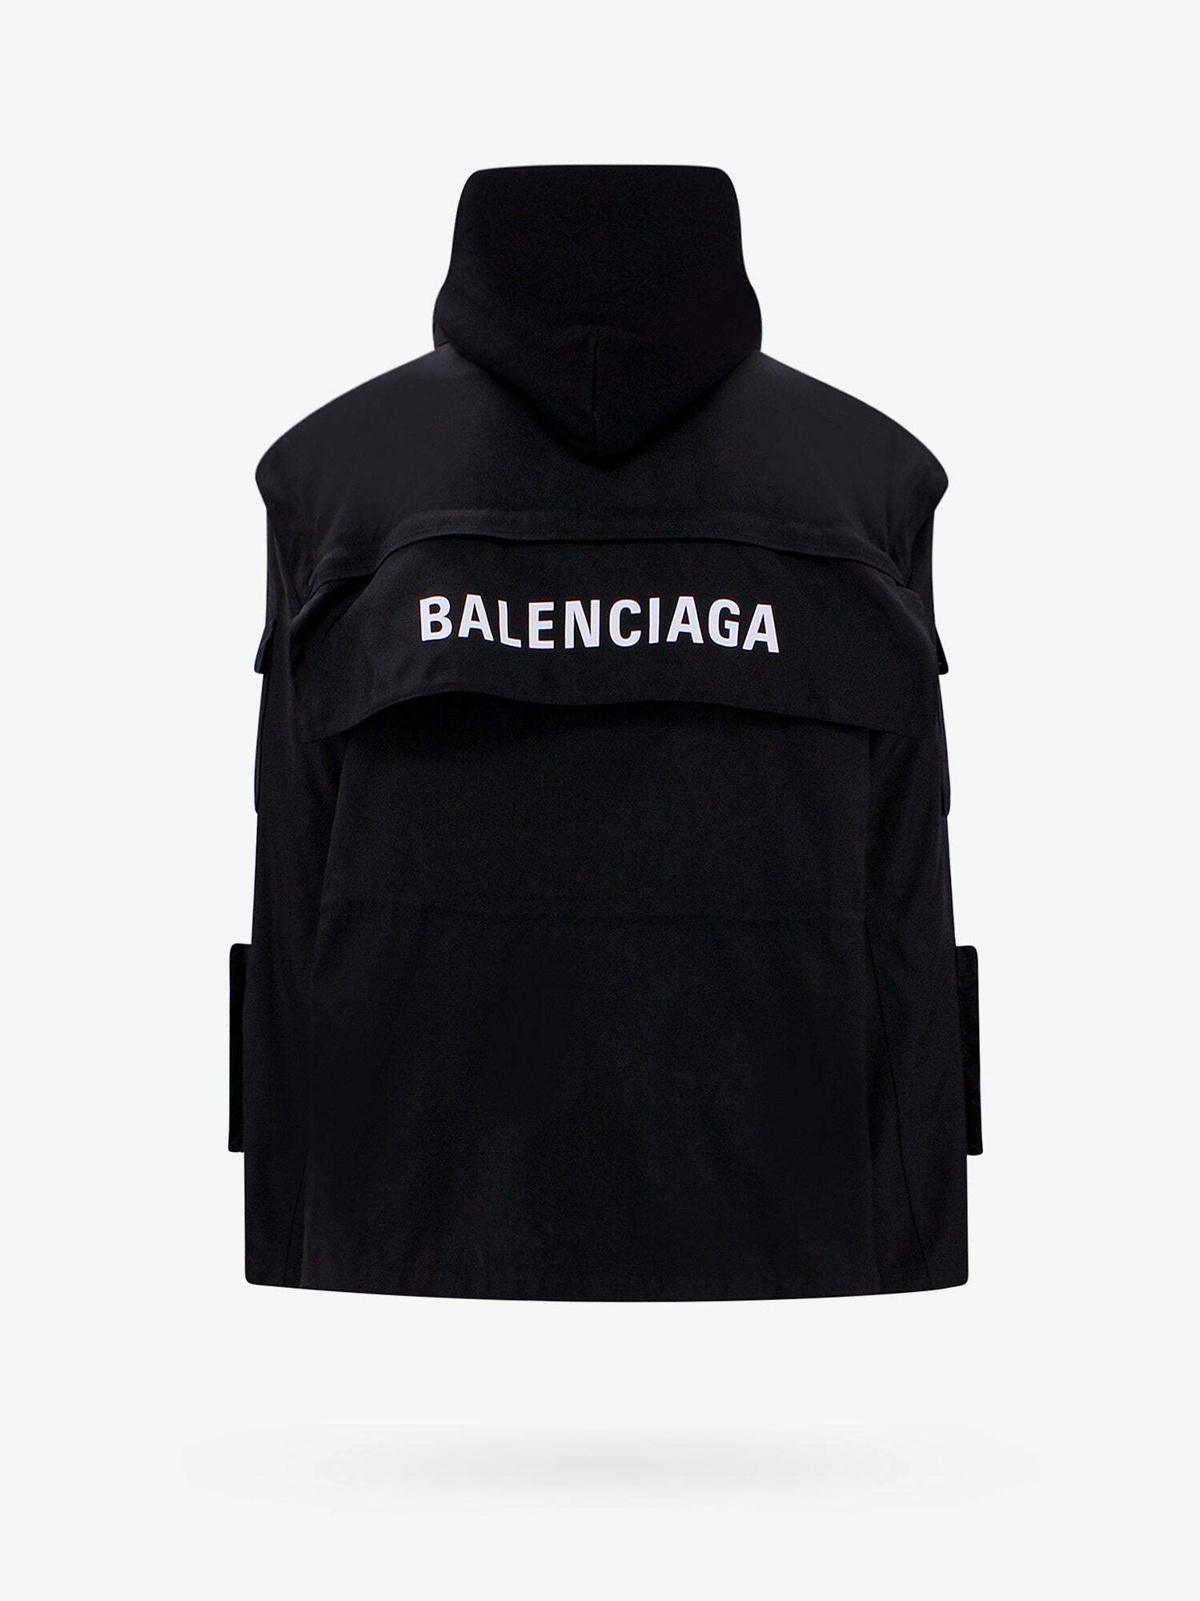 Balenciaga Jackets for Men  Shop Now on FARFETCH